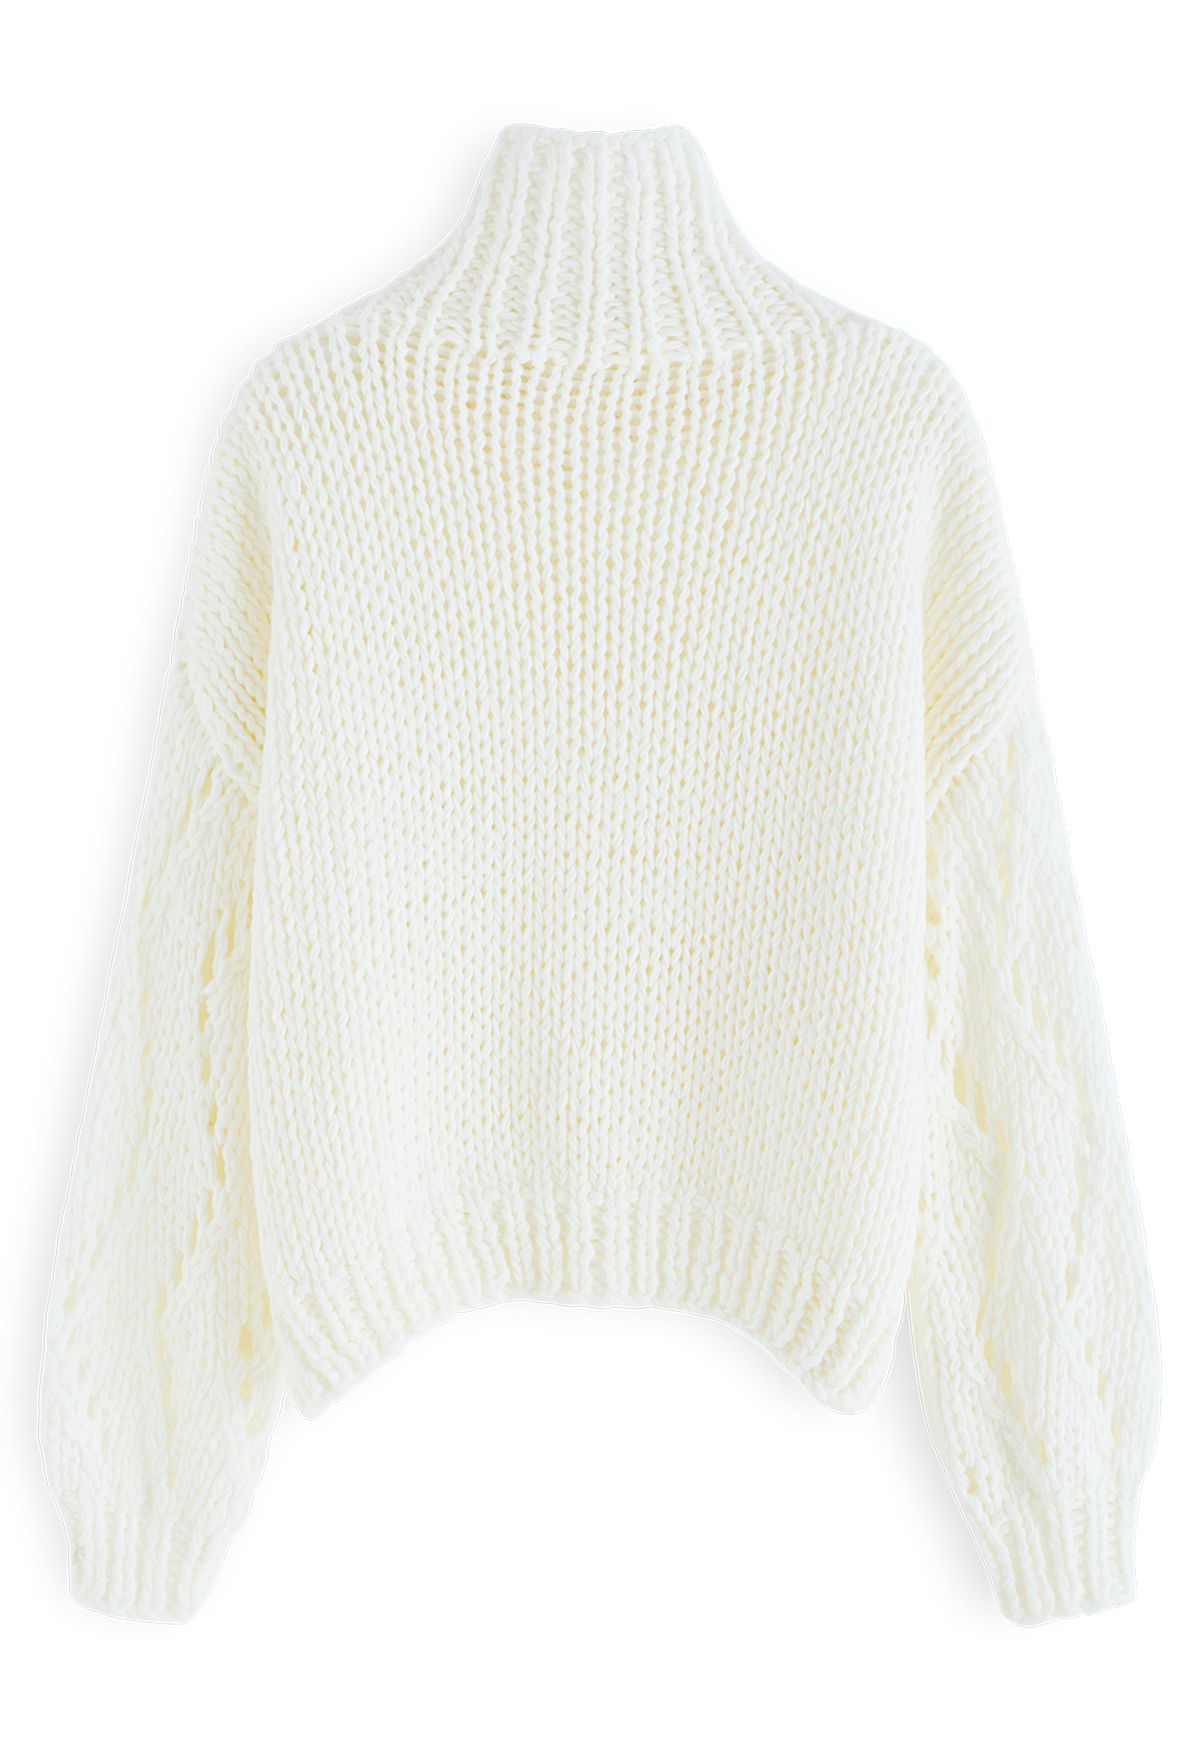 Suéter de tricot à mão com manga e gola alta Pointelle em branco